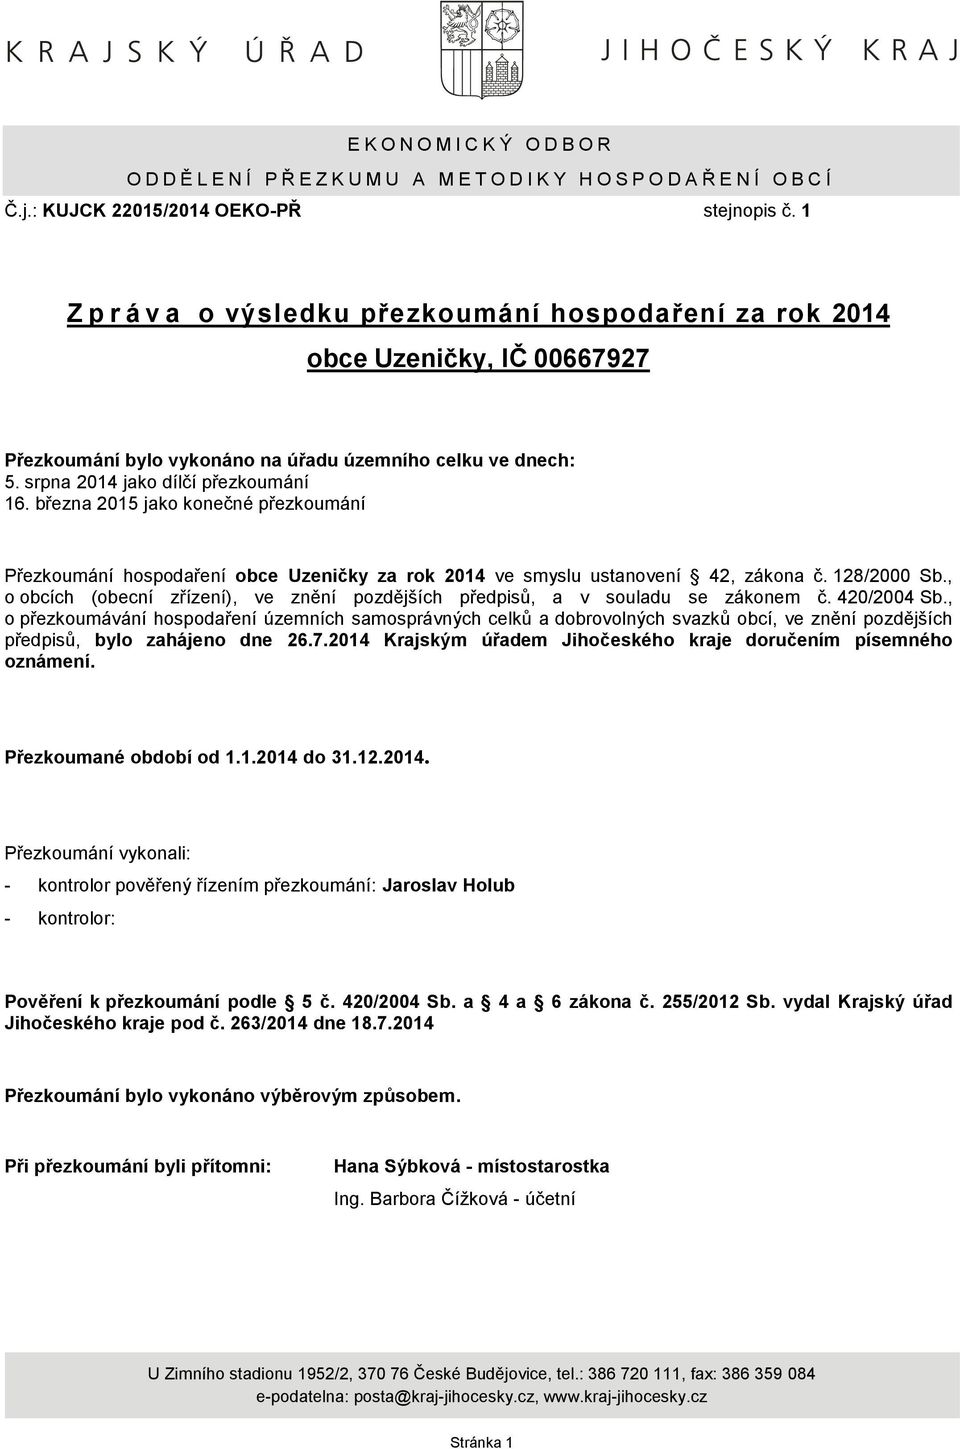 března 2015 jako konečné přezkoumání Přezkoumání hospodaření obce Uzeničky za rok 2014 ve smyslu ustanovení 42, zákona č. 128/2000 Sb.